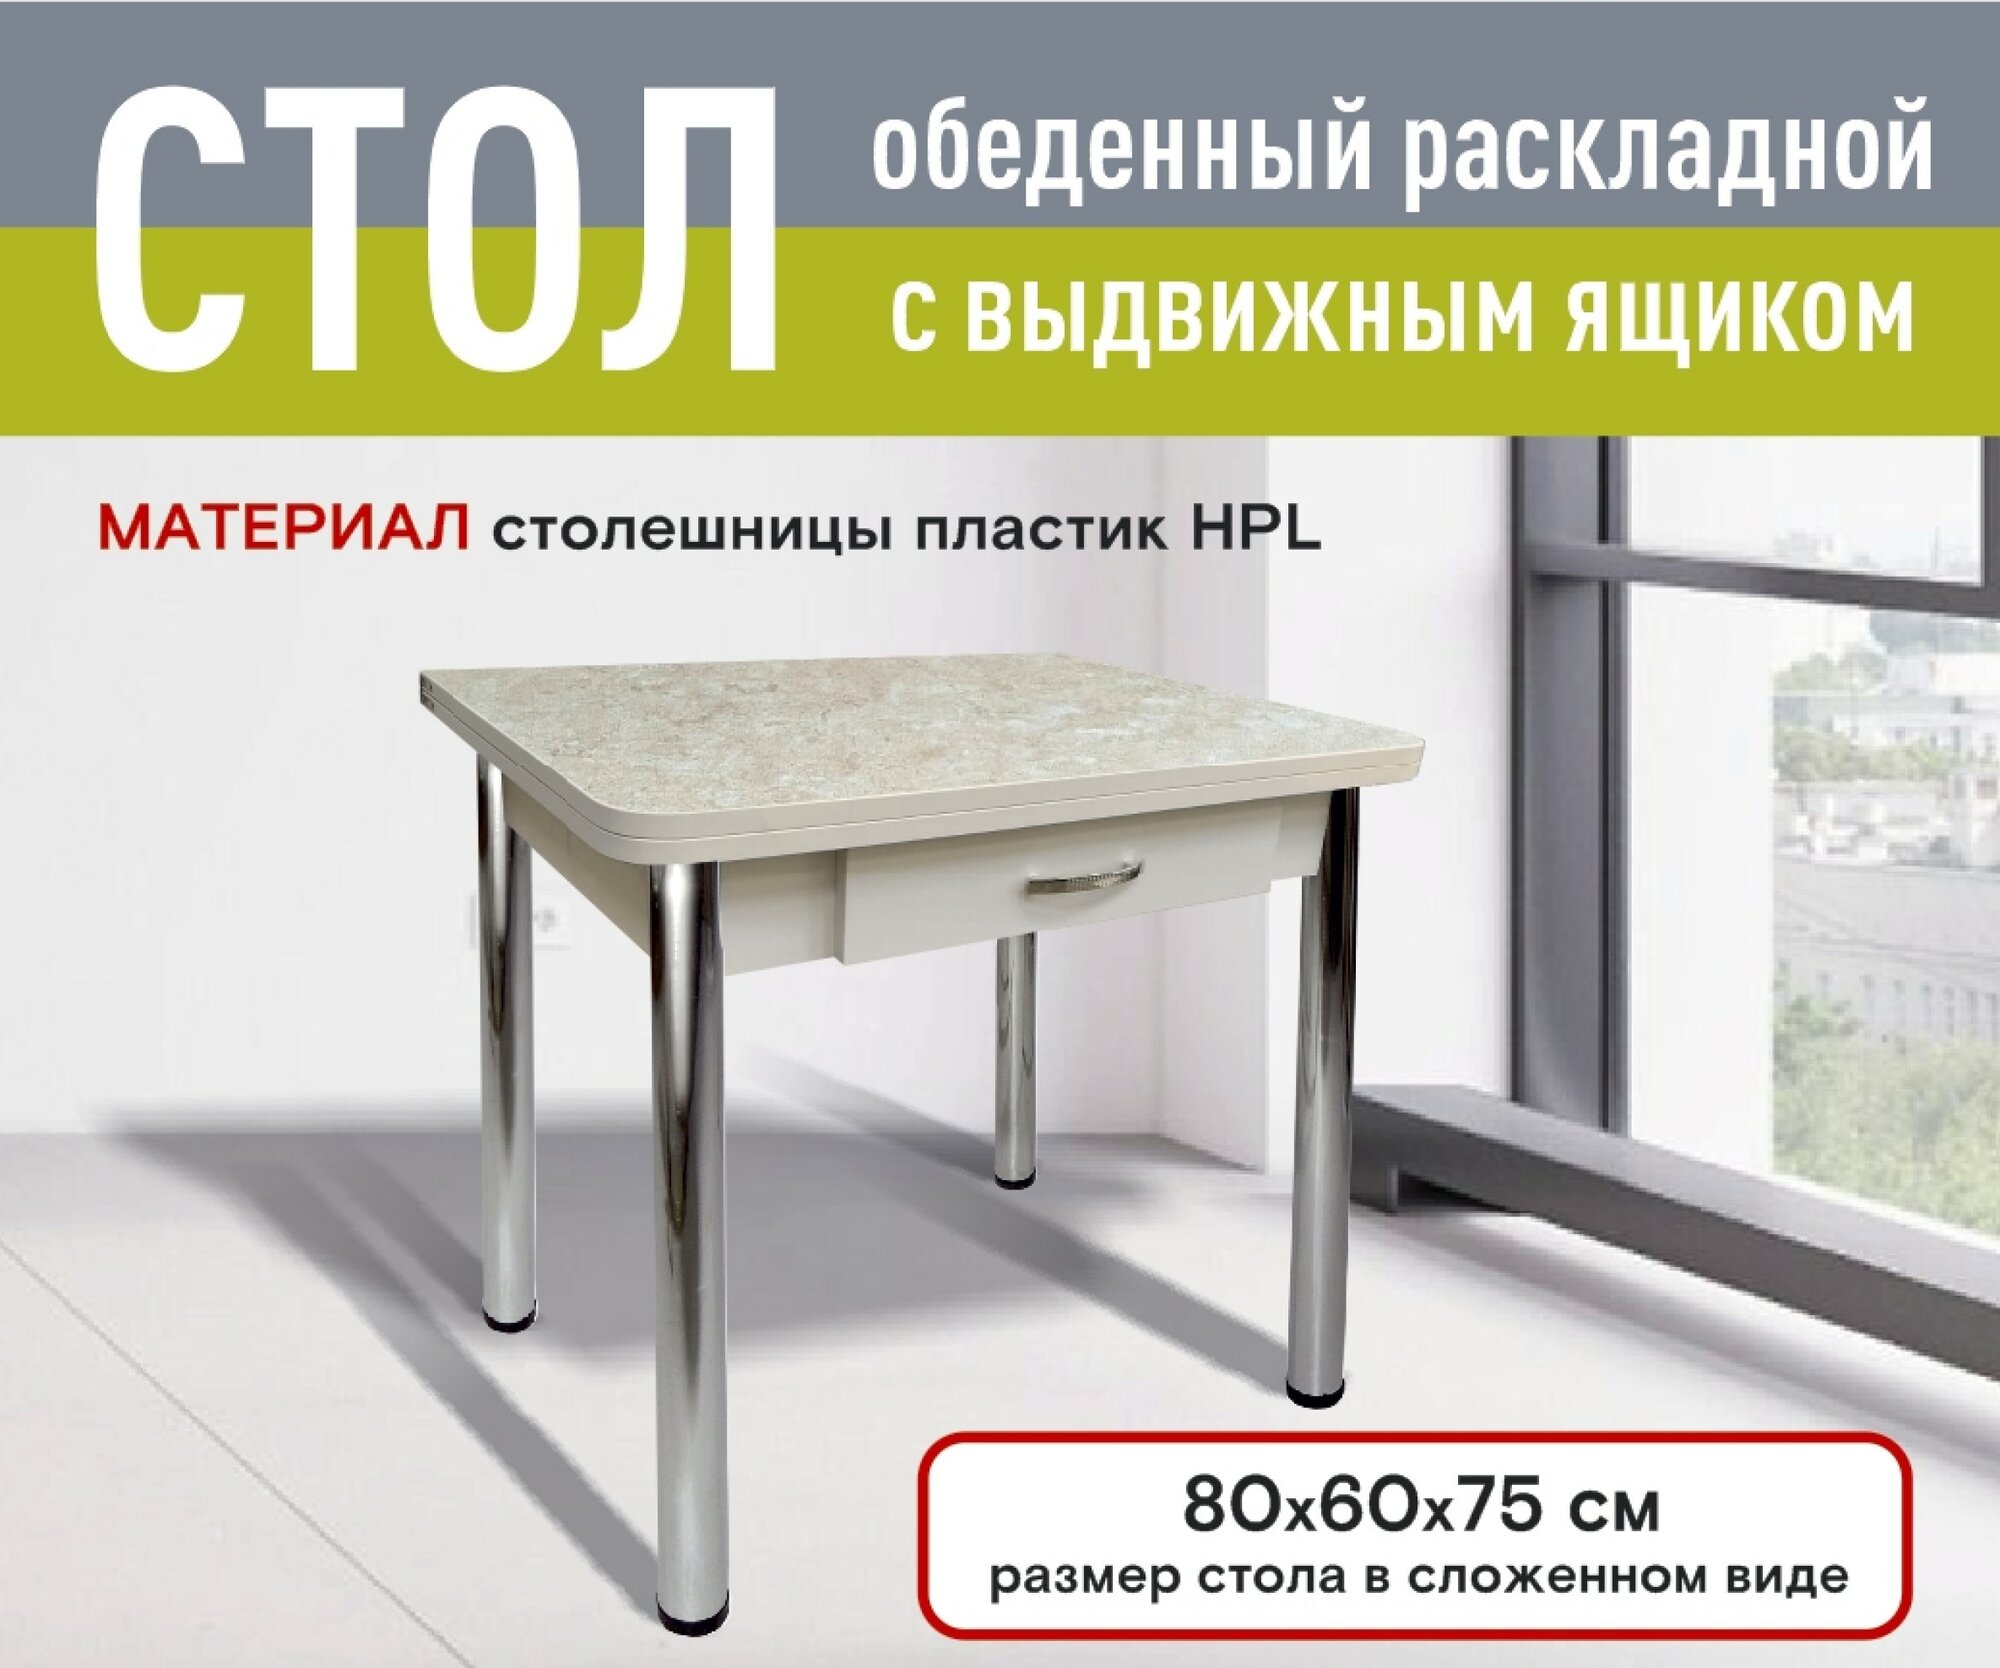 Стол Кухонный Раскладной с ящиком, Ломберный 80*60*75 см, пластик HPL, матовый